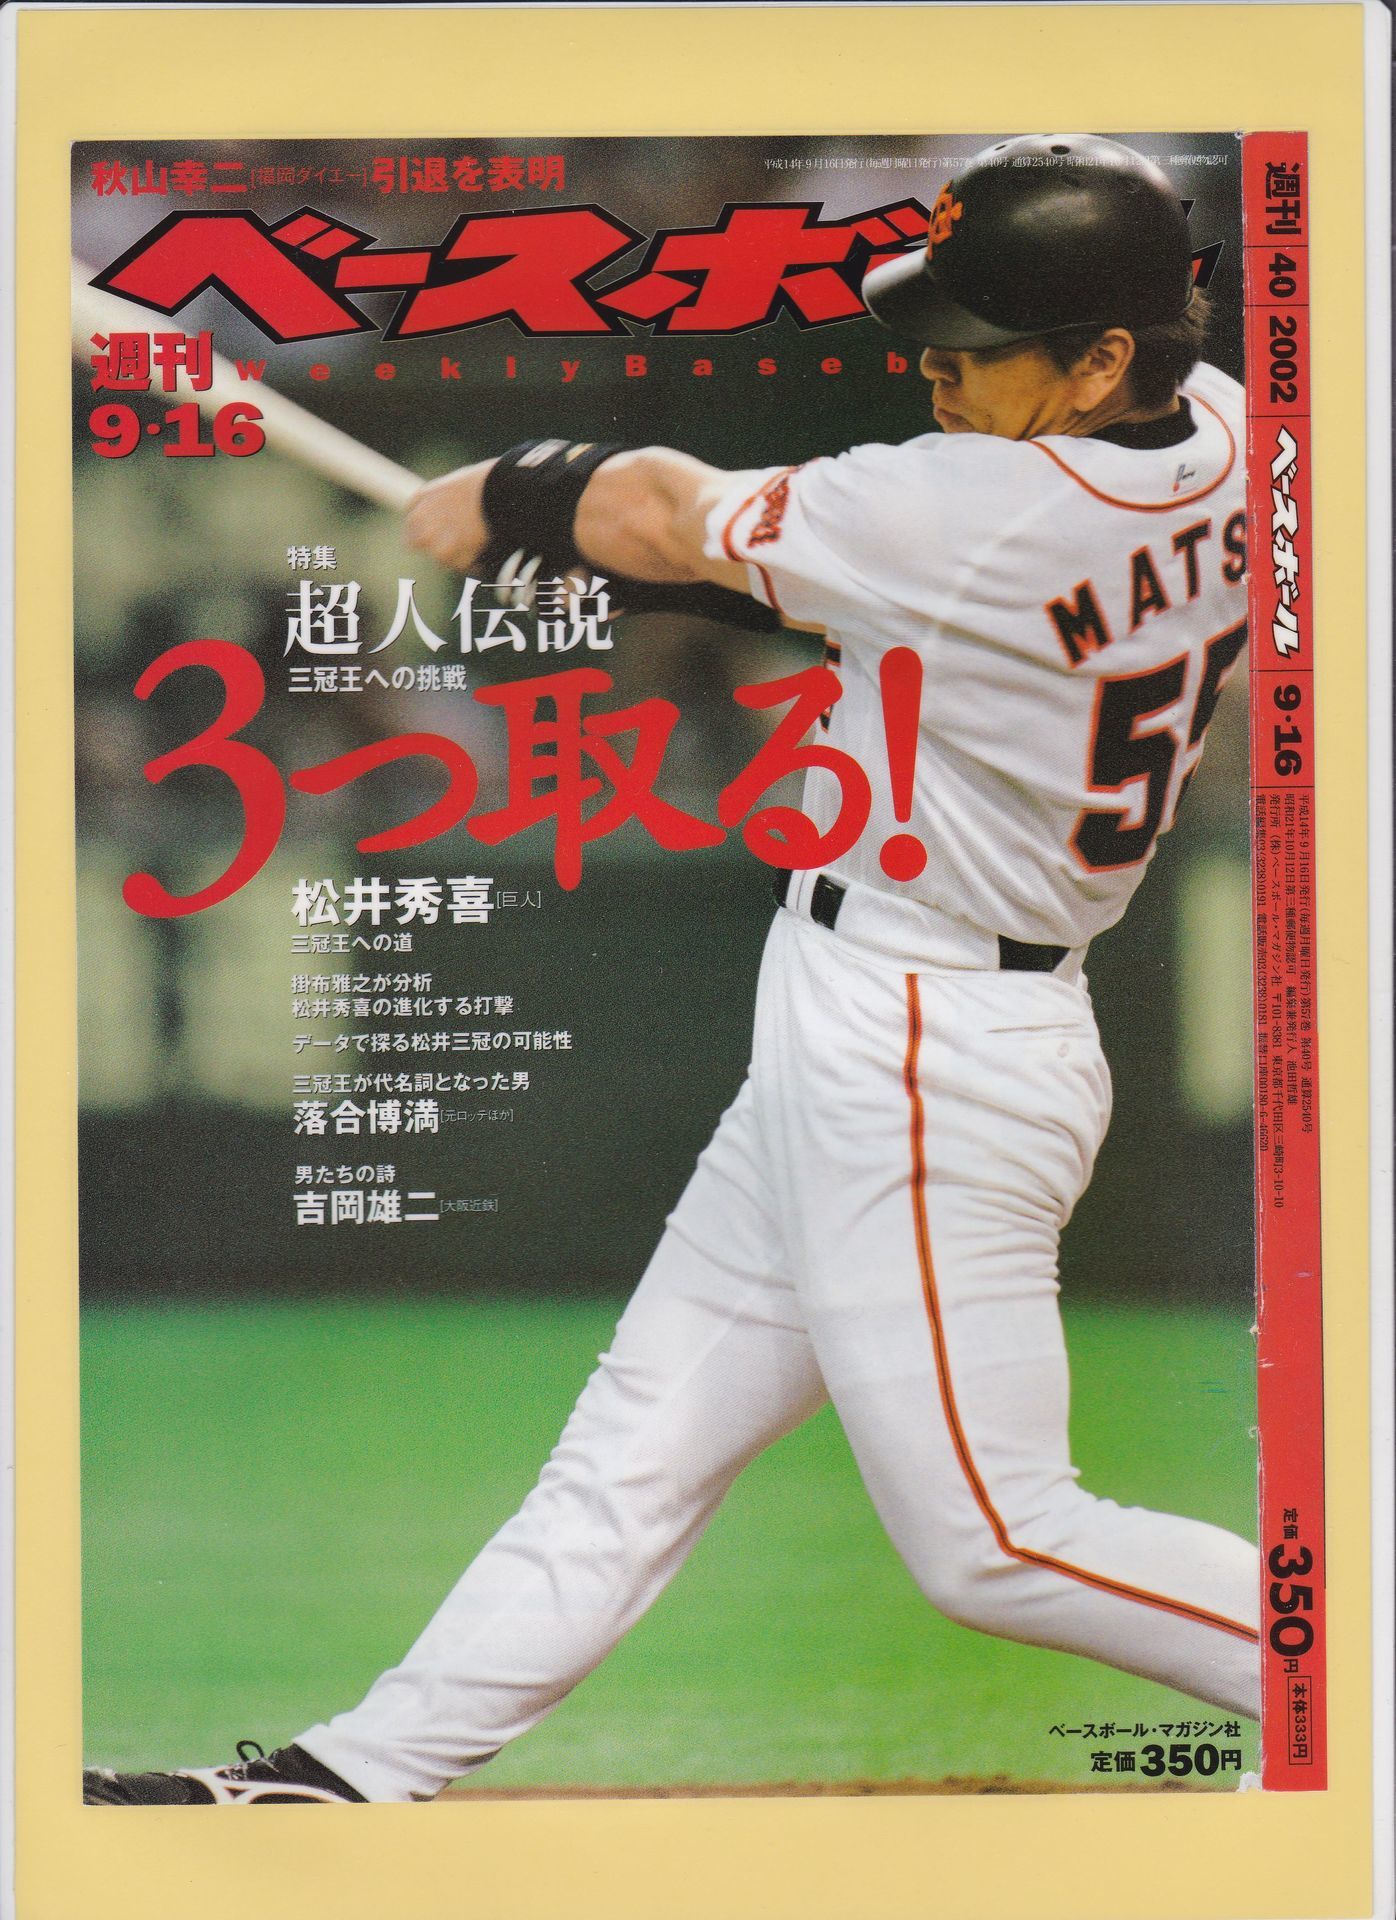 ゴジラ 松井秀喜の週刊ベースボール表紙 表紙で見る ゴジラ 松井秀喜の本